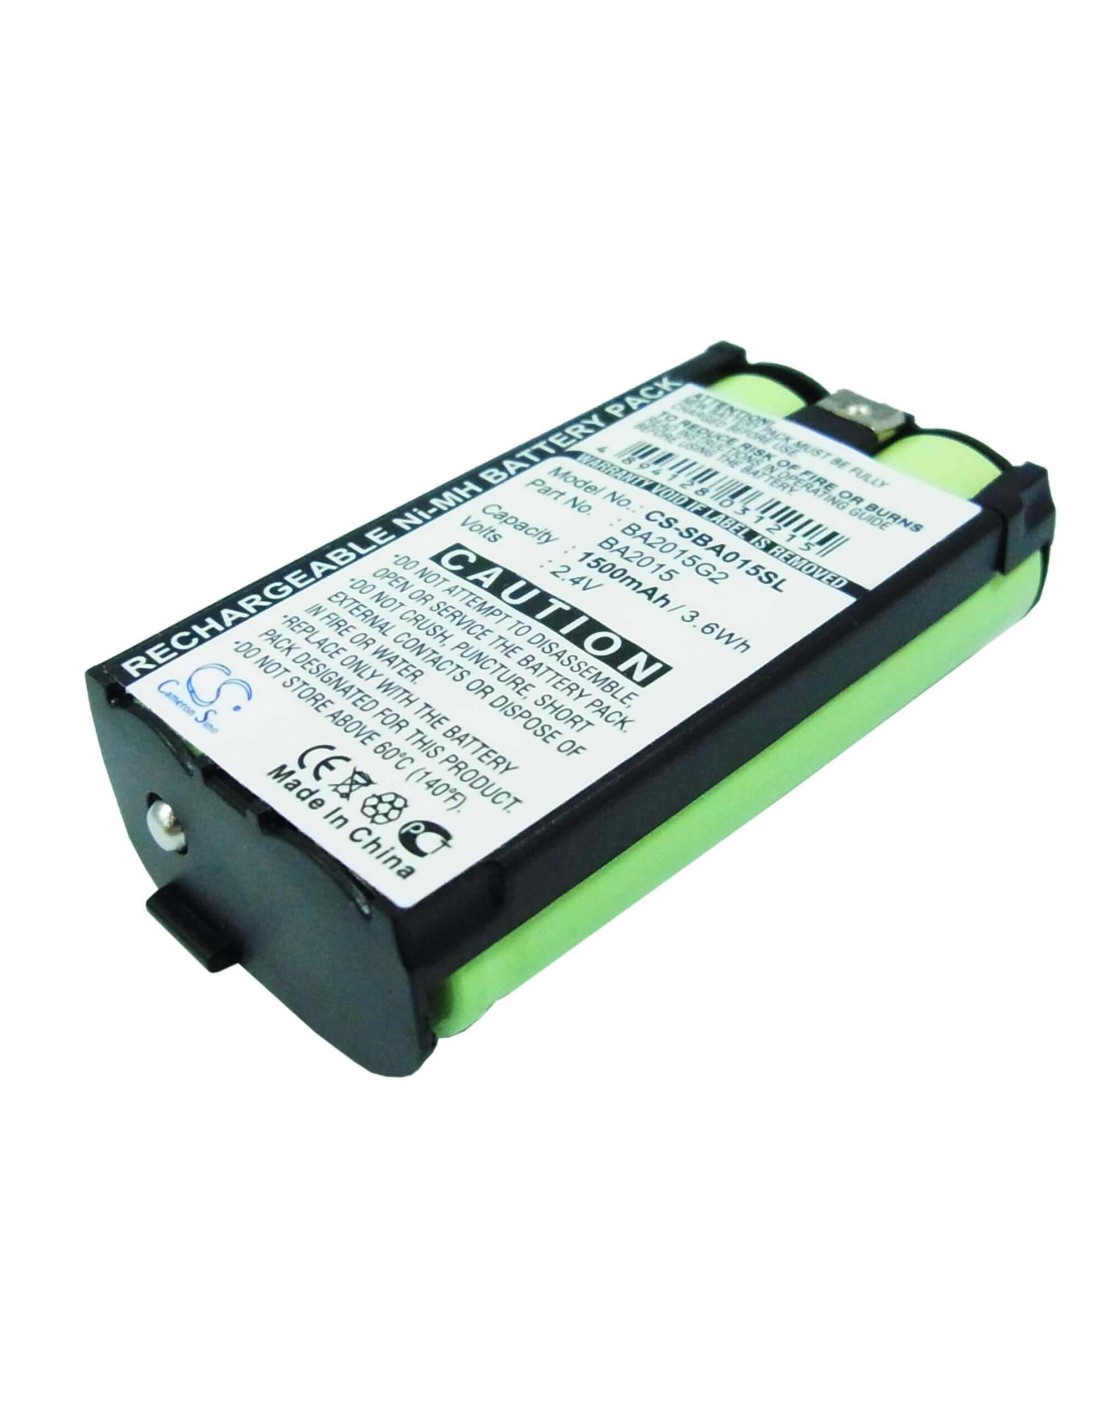 Battery for Sennheiser G2, 2015fm, Ek1038 2.4V, 1500mAh - 3.60Wh